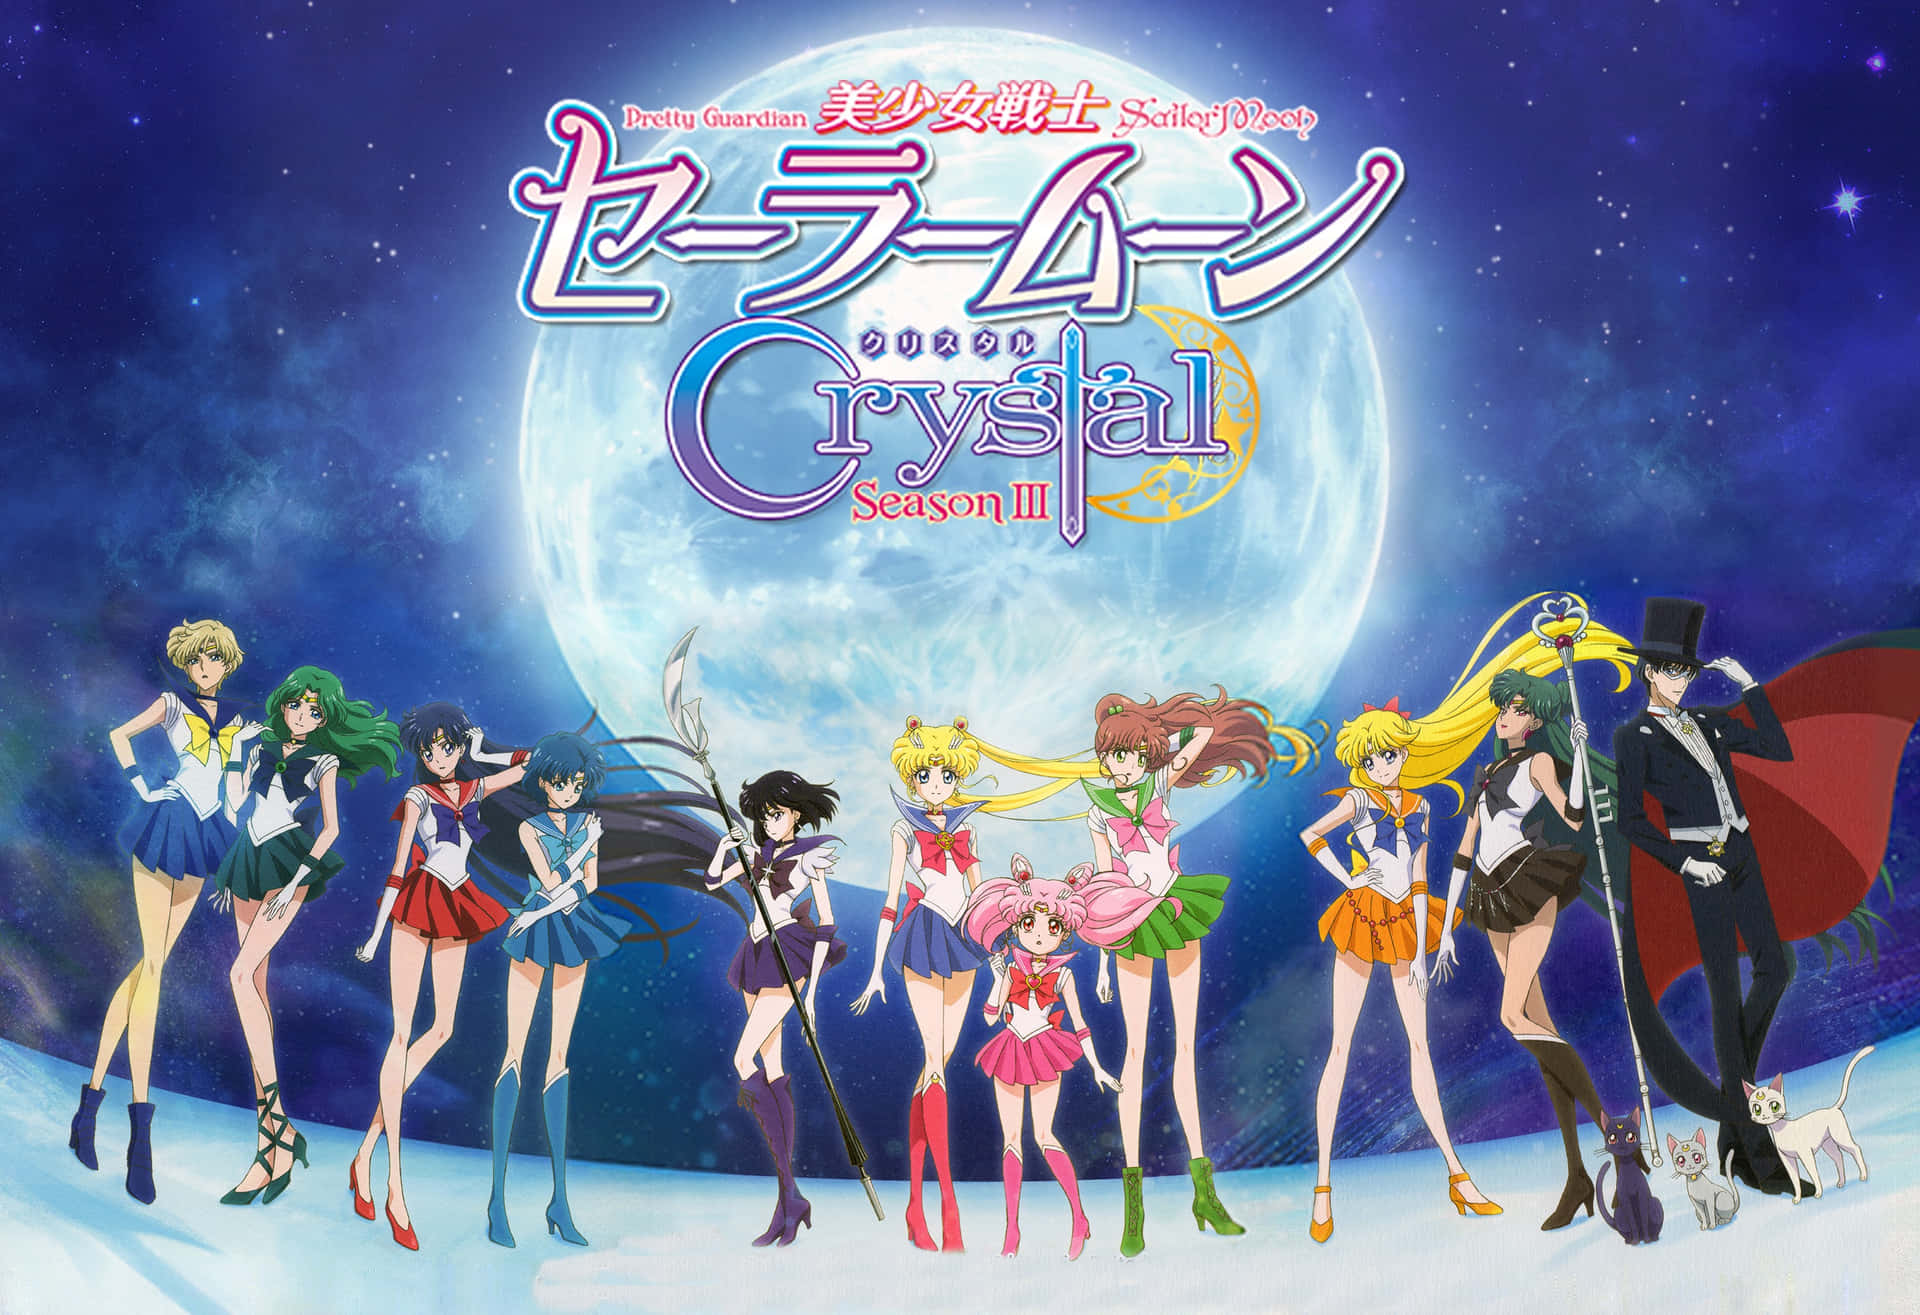 Personajesde Sailor Moon Crystal Fondo de pantalla